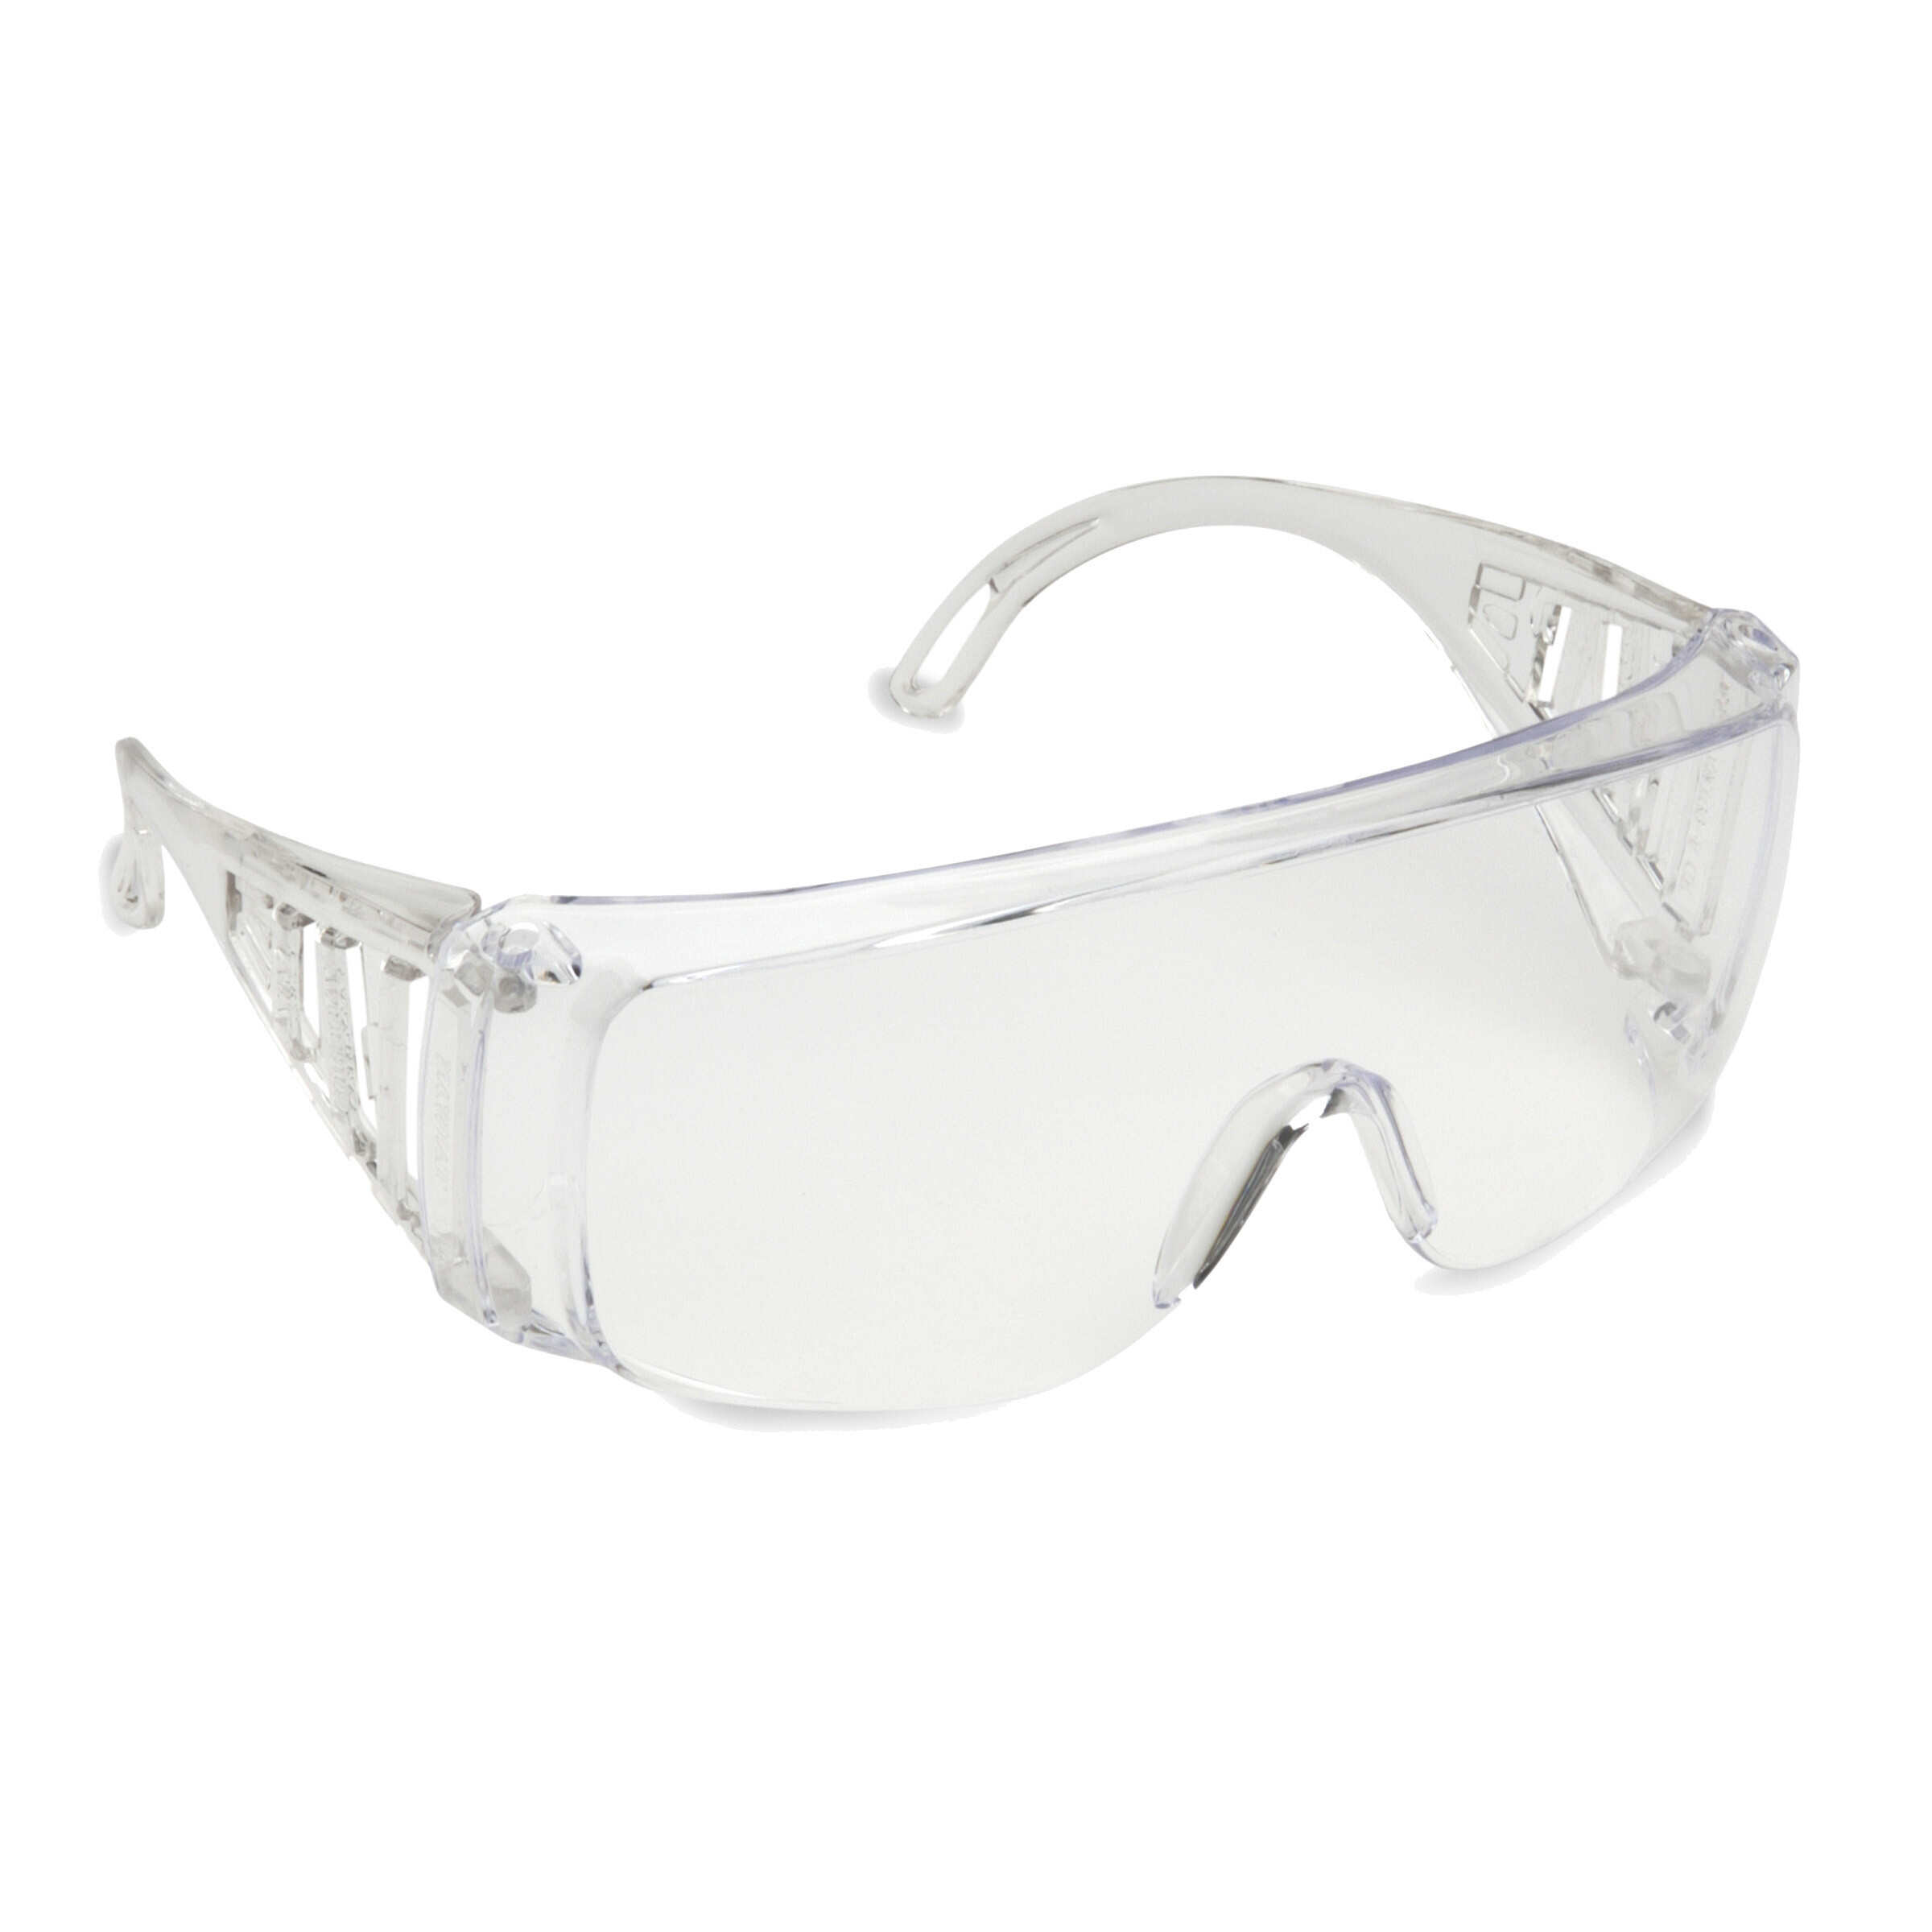 Cordova Slammer™ OTG Safety Glasses, Clear Frame and Lens